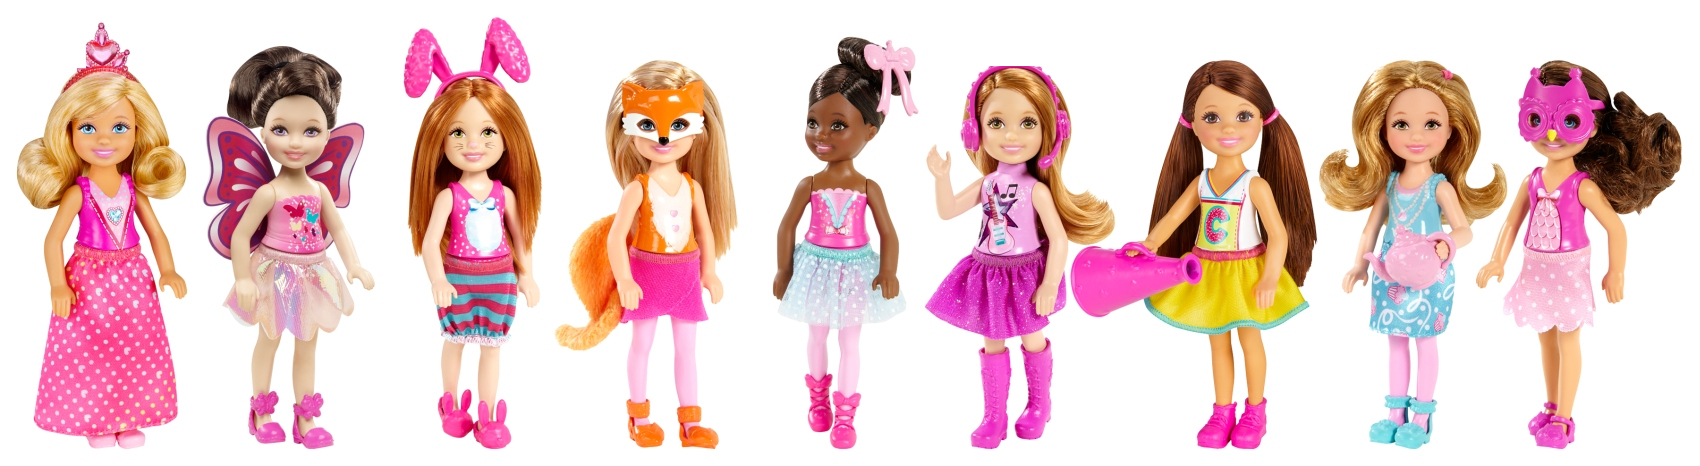 Кукла Barbie  «Челси и друзья» из серии «Семья» Mattel, CGF39 